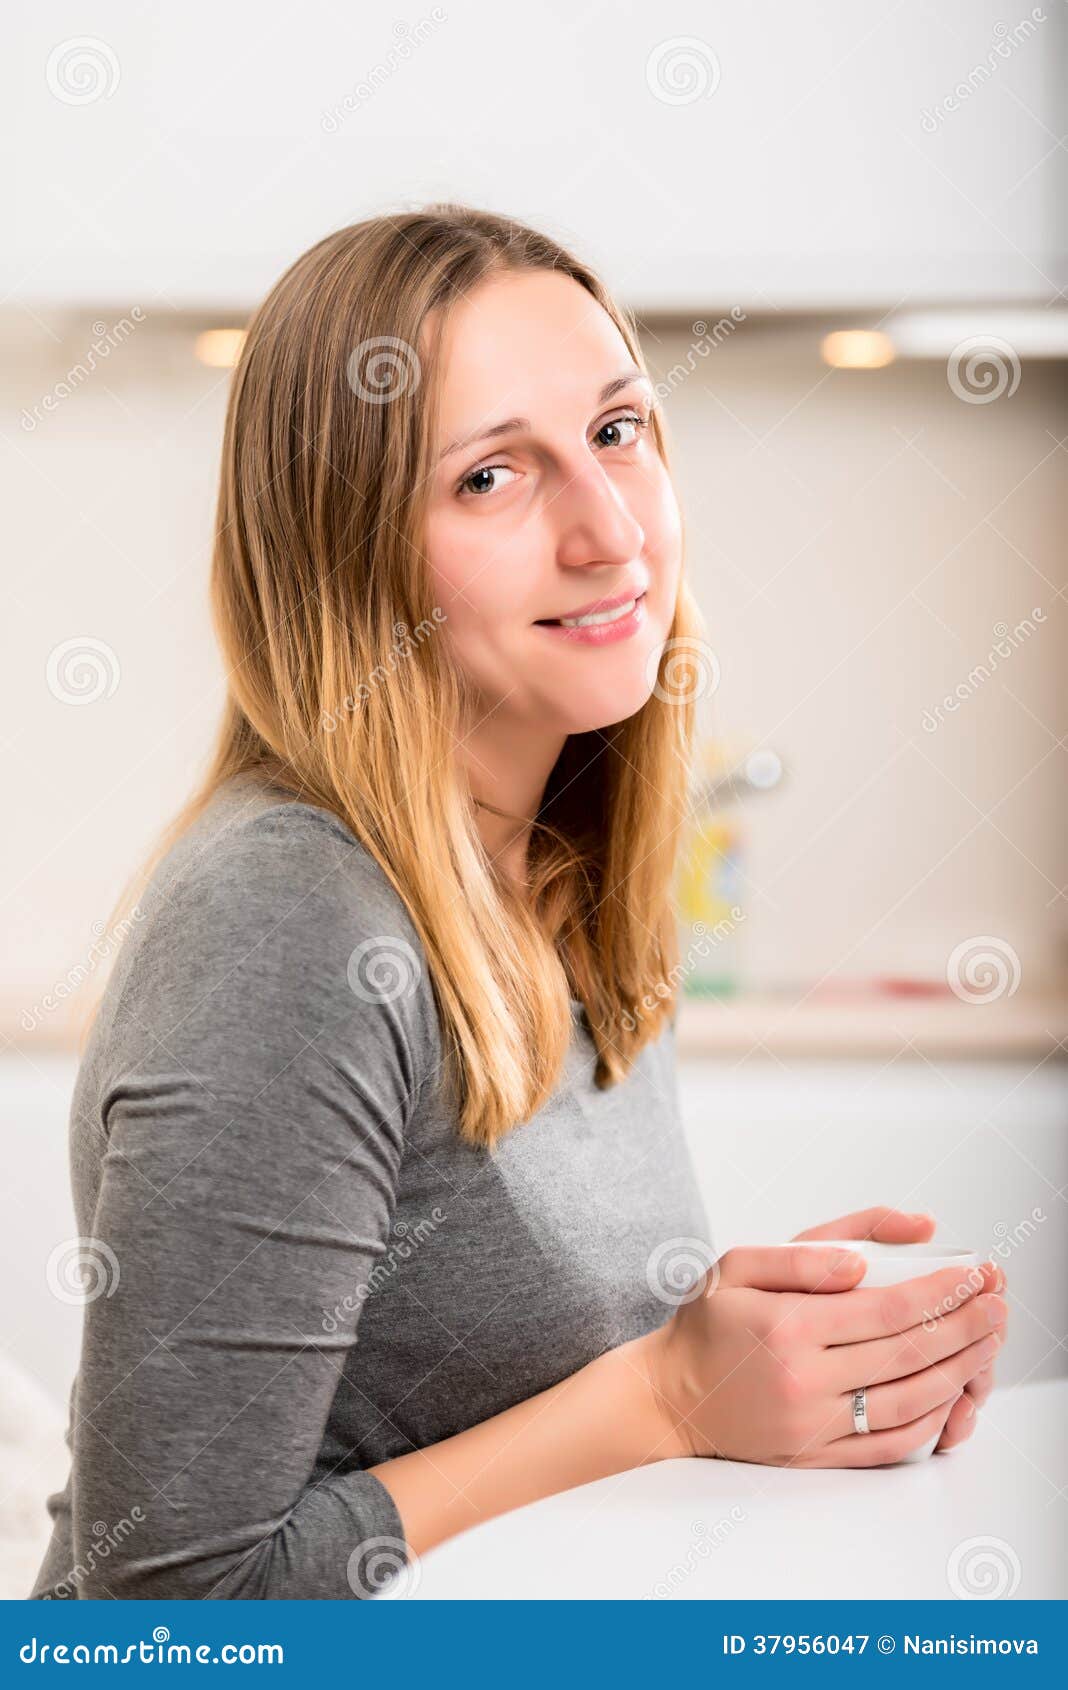 Happy girl in grey holding mug vertical. Happy girl in grey holding mug and looking at camera with smile